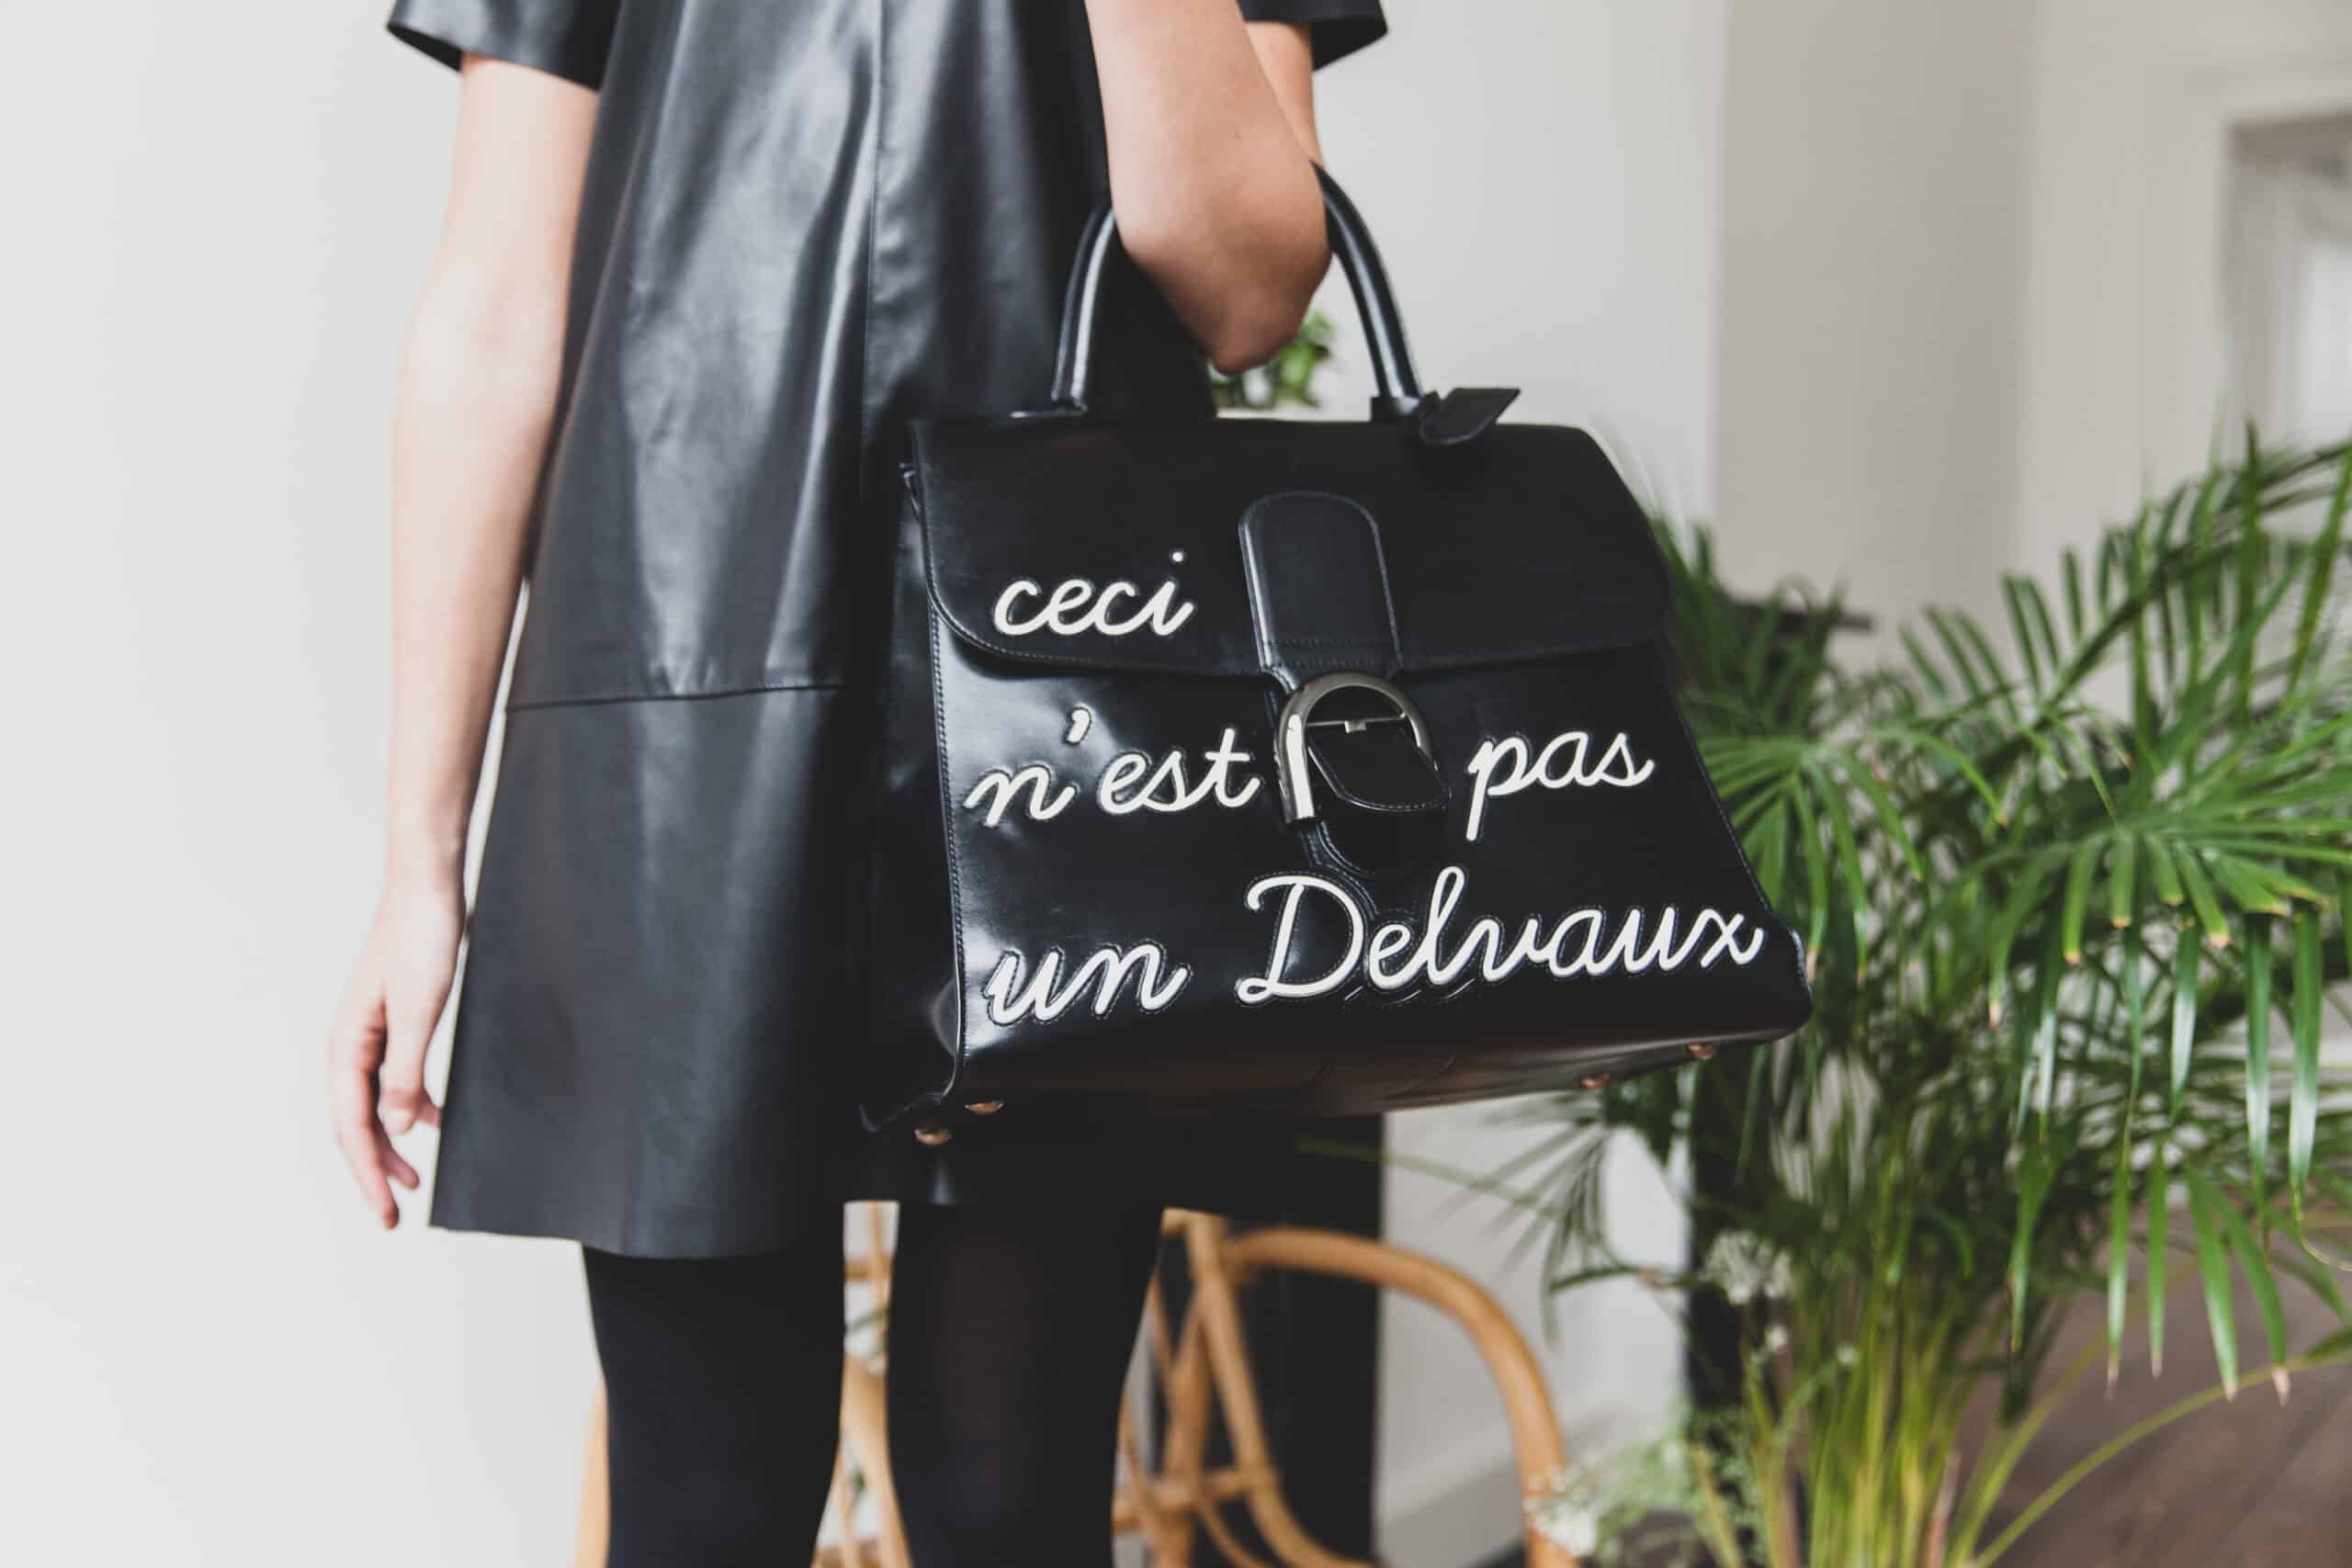 Lot - A Delvaux Brillant black croco vintage handbag, H 23 x 28,5 cm